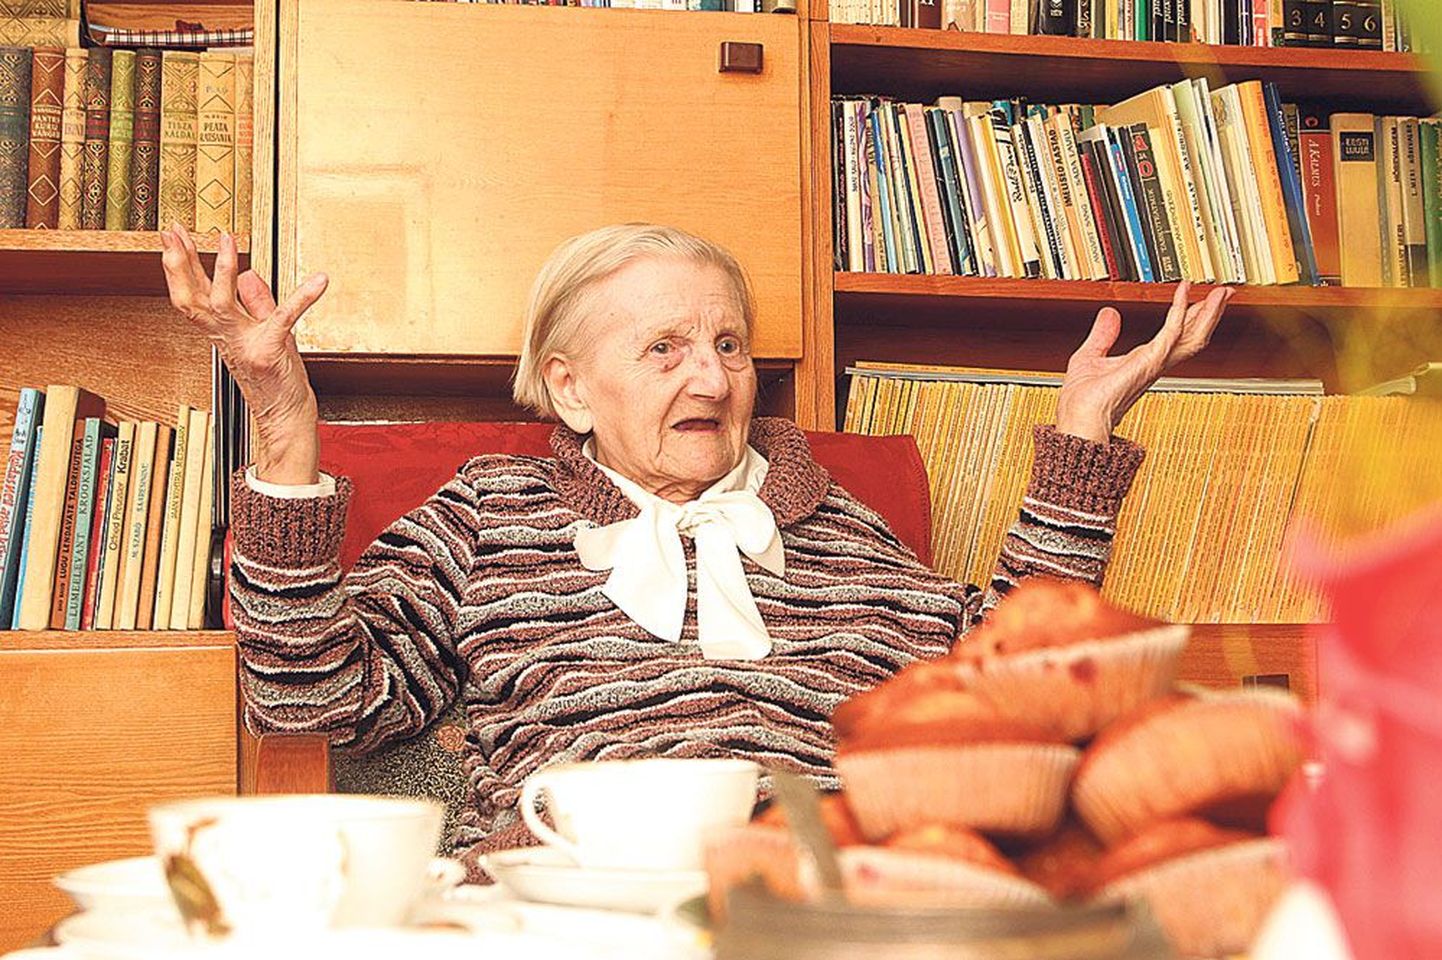 101-aastane Ellen Lätt ütleb, et kõige tähtsam asi elus on hoida oma lähedastega head suhted.